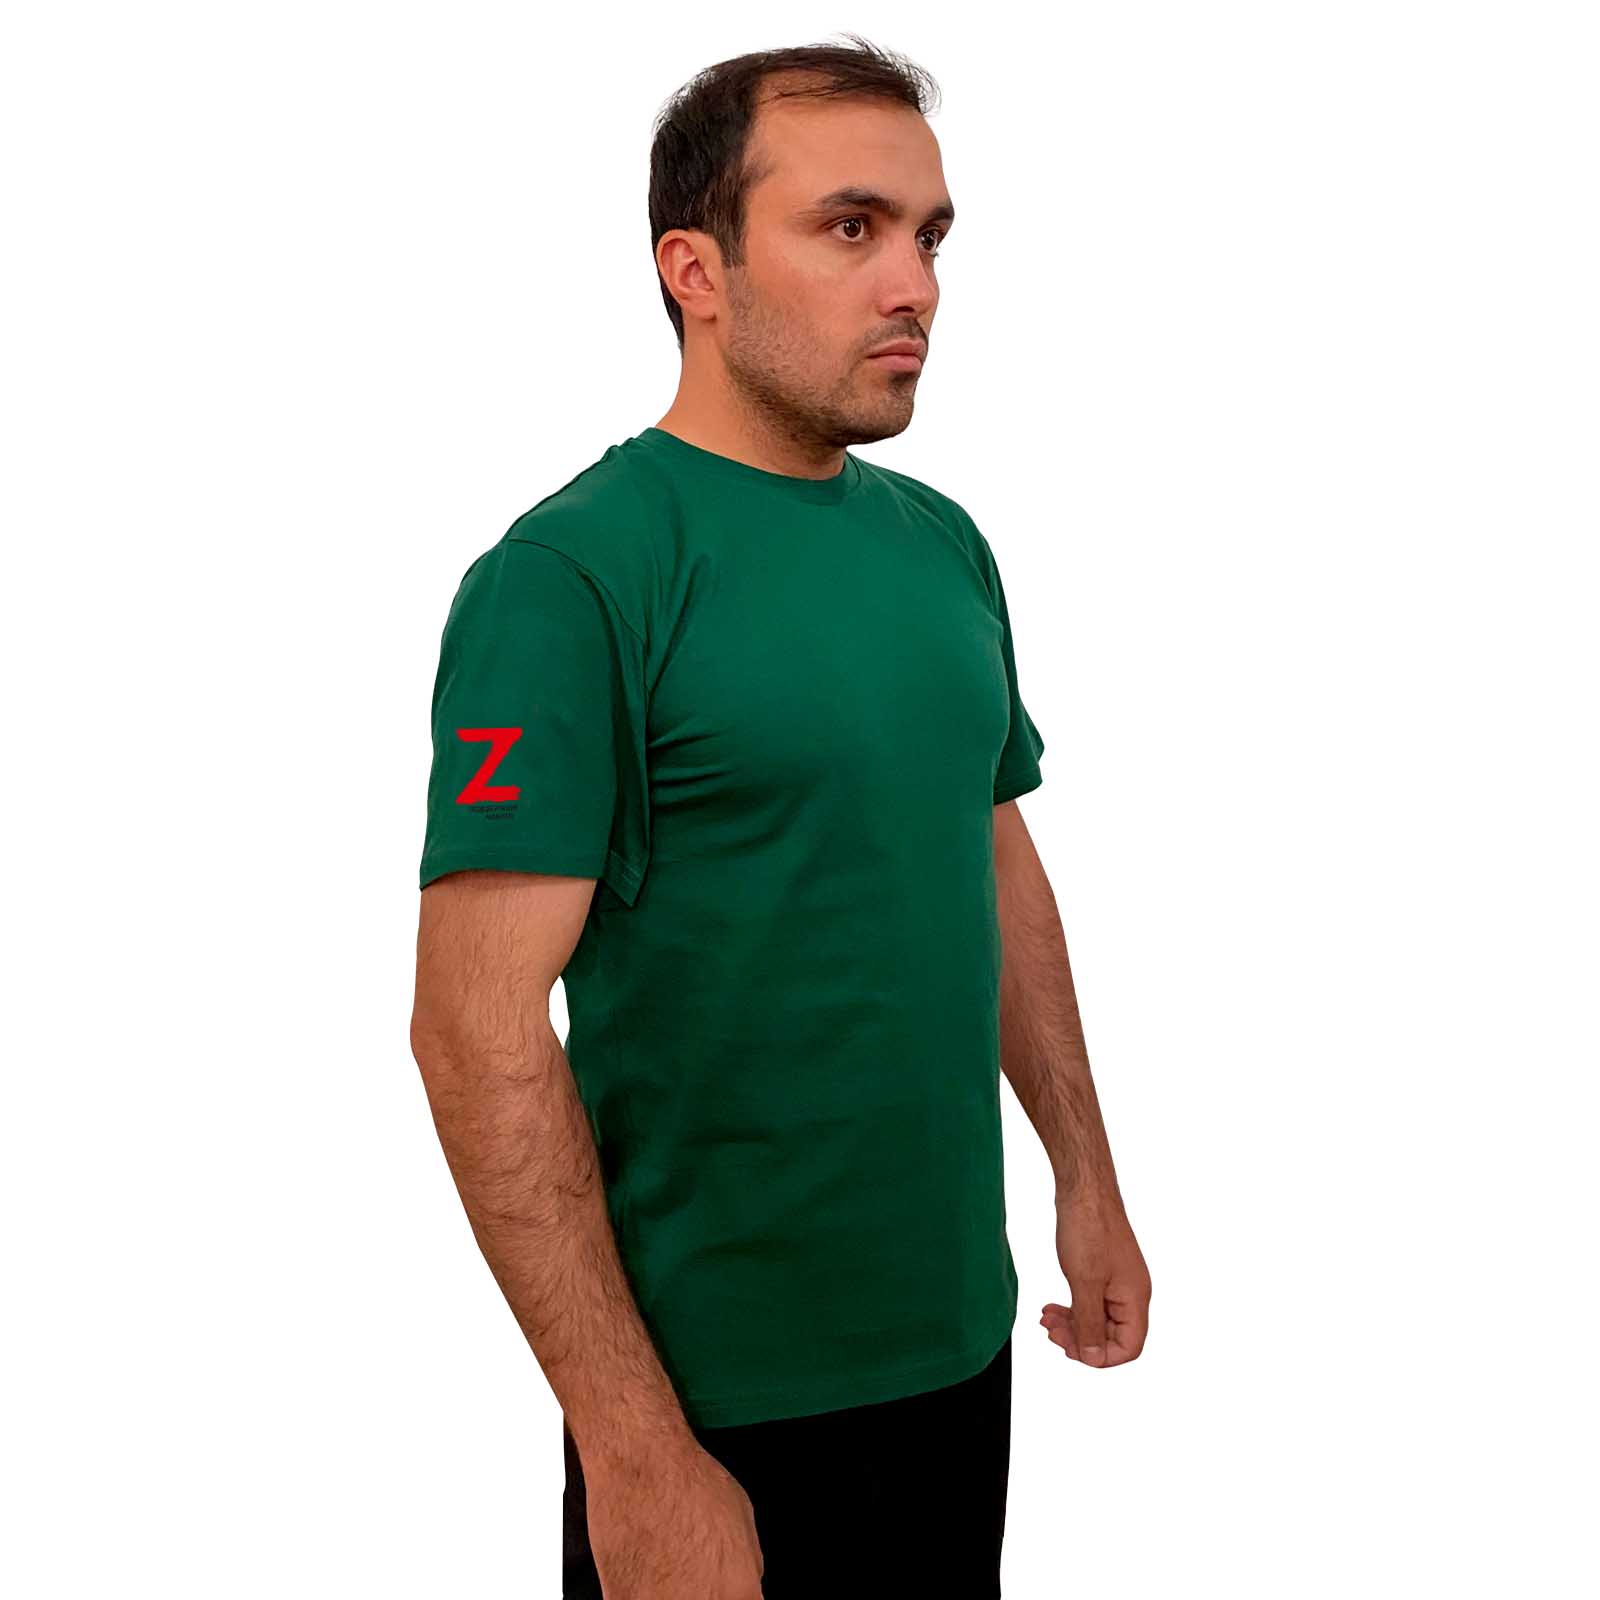 Зелёная футболка с термопереводкой Z на рукаве